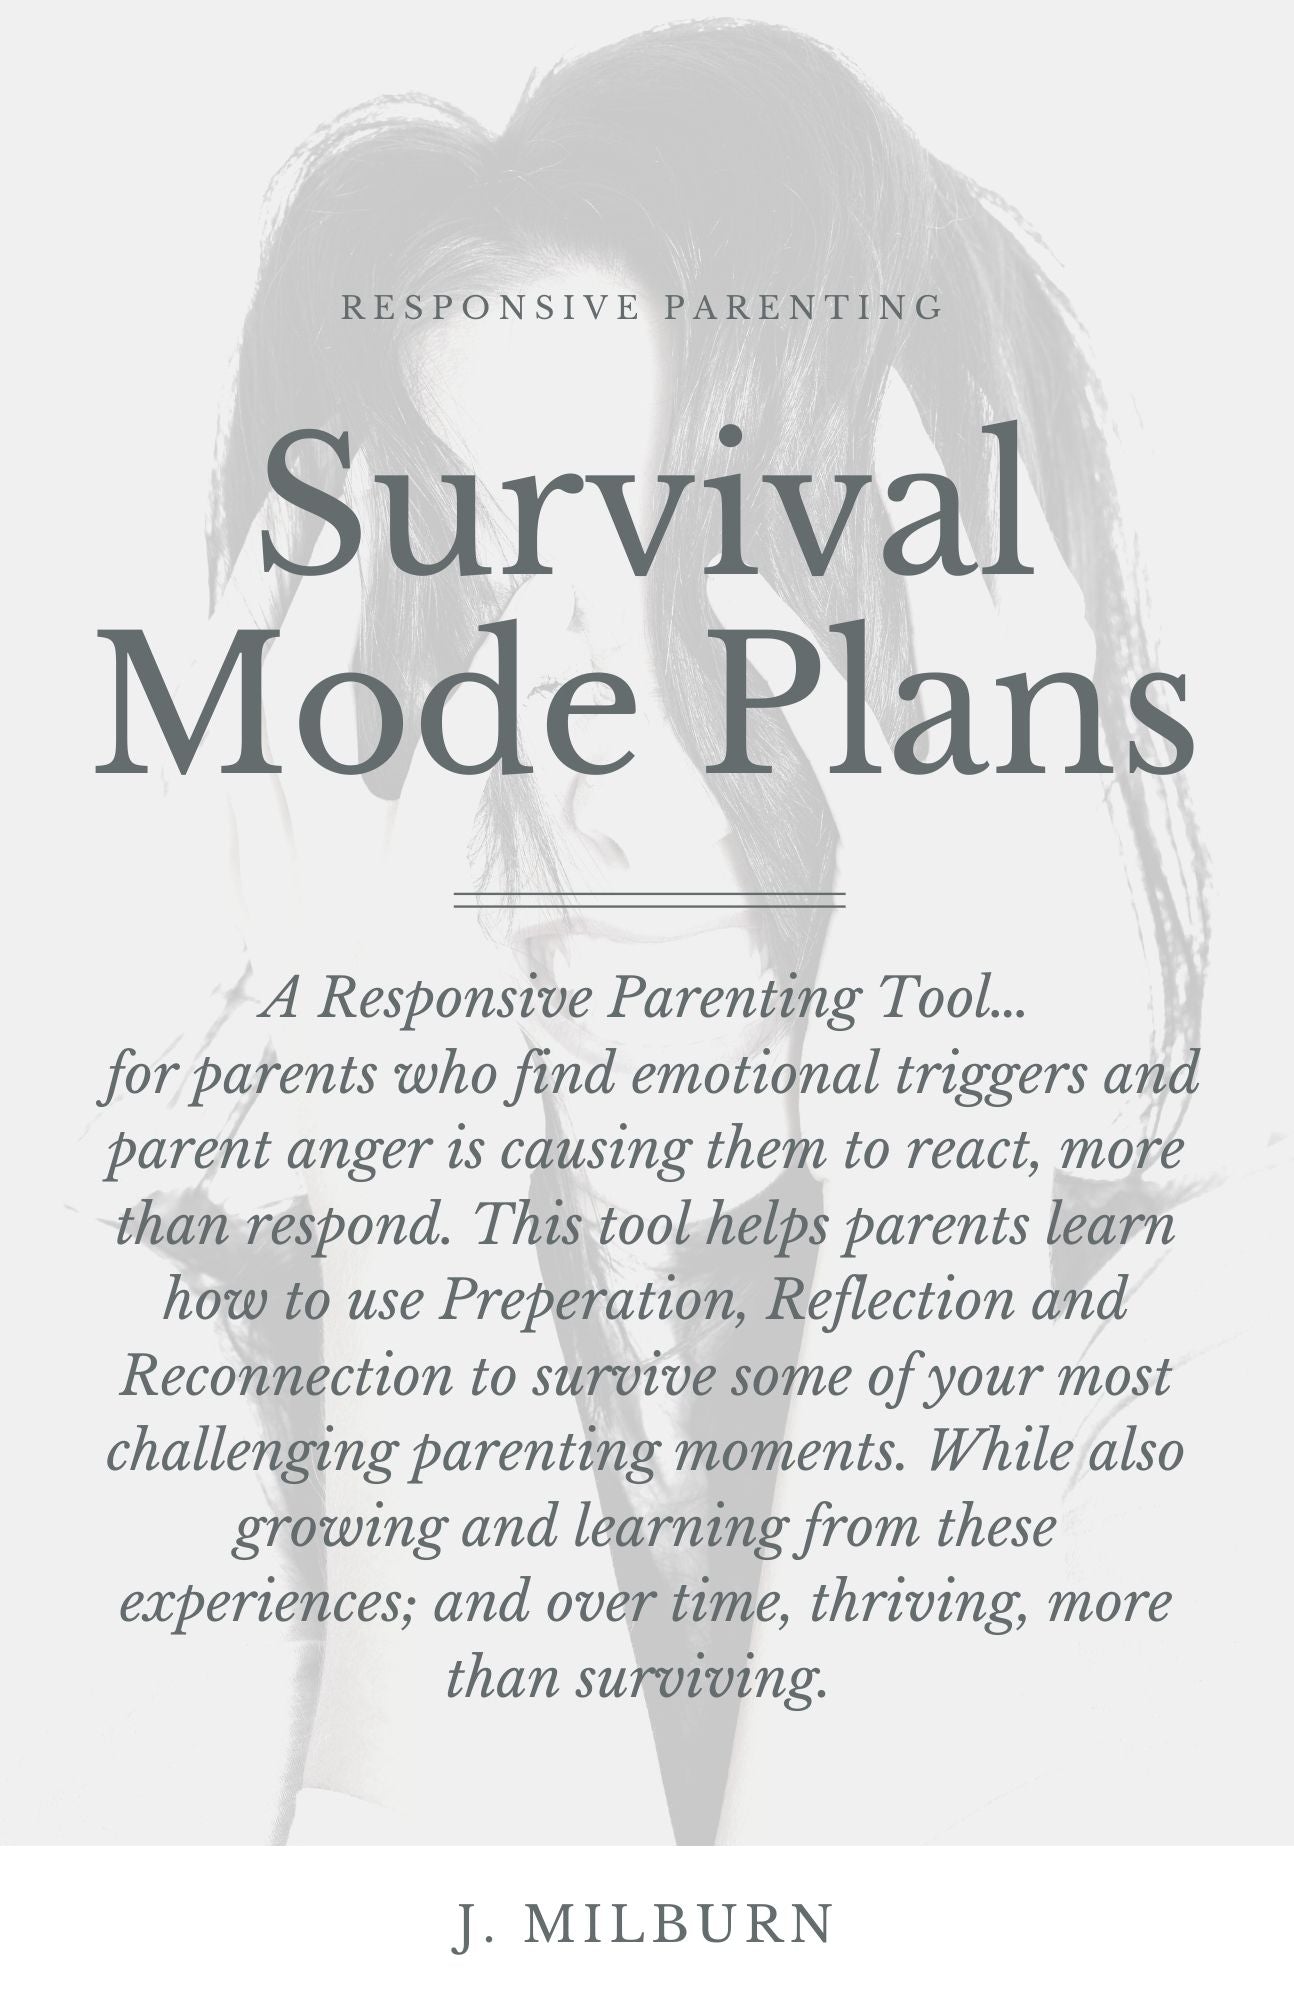 A Guide to Survival Mode Plans E-Book